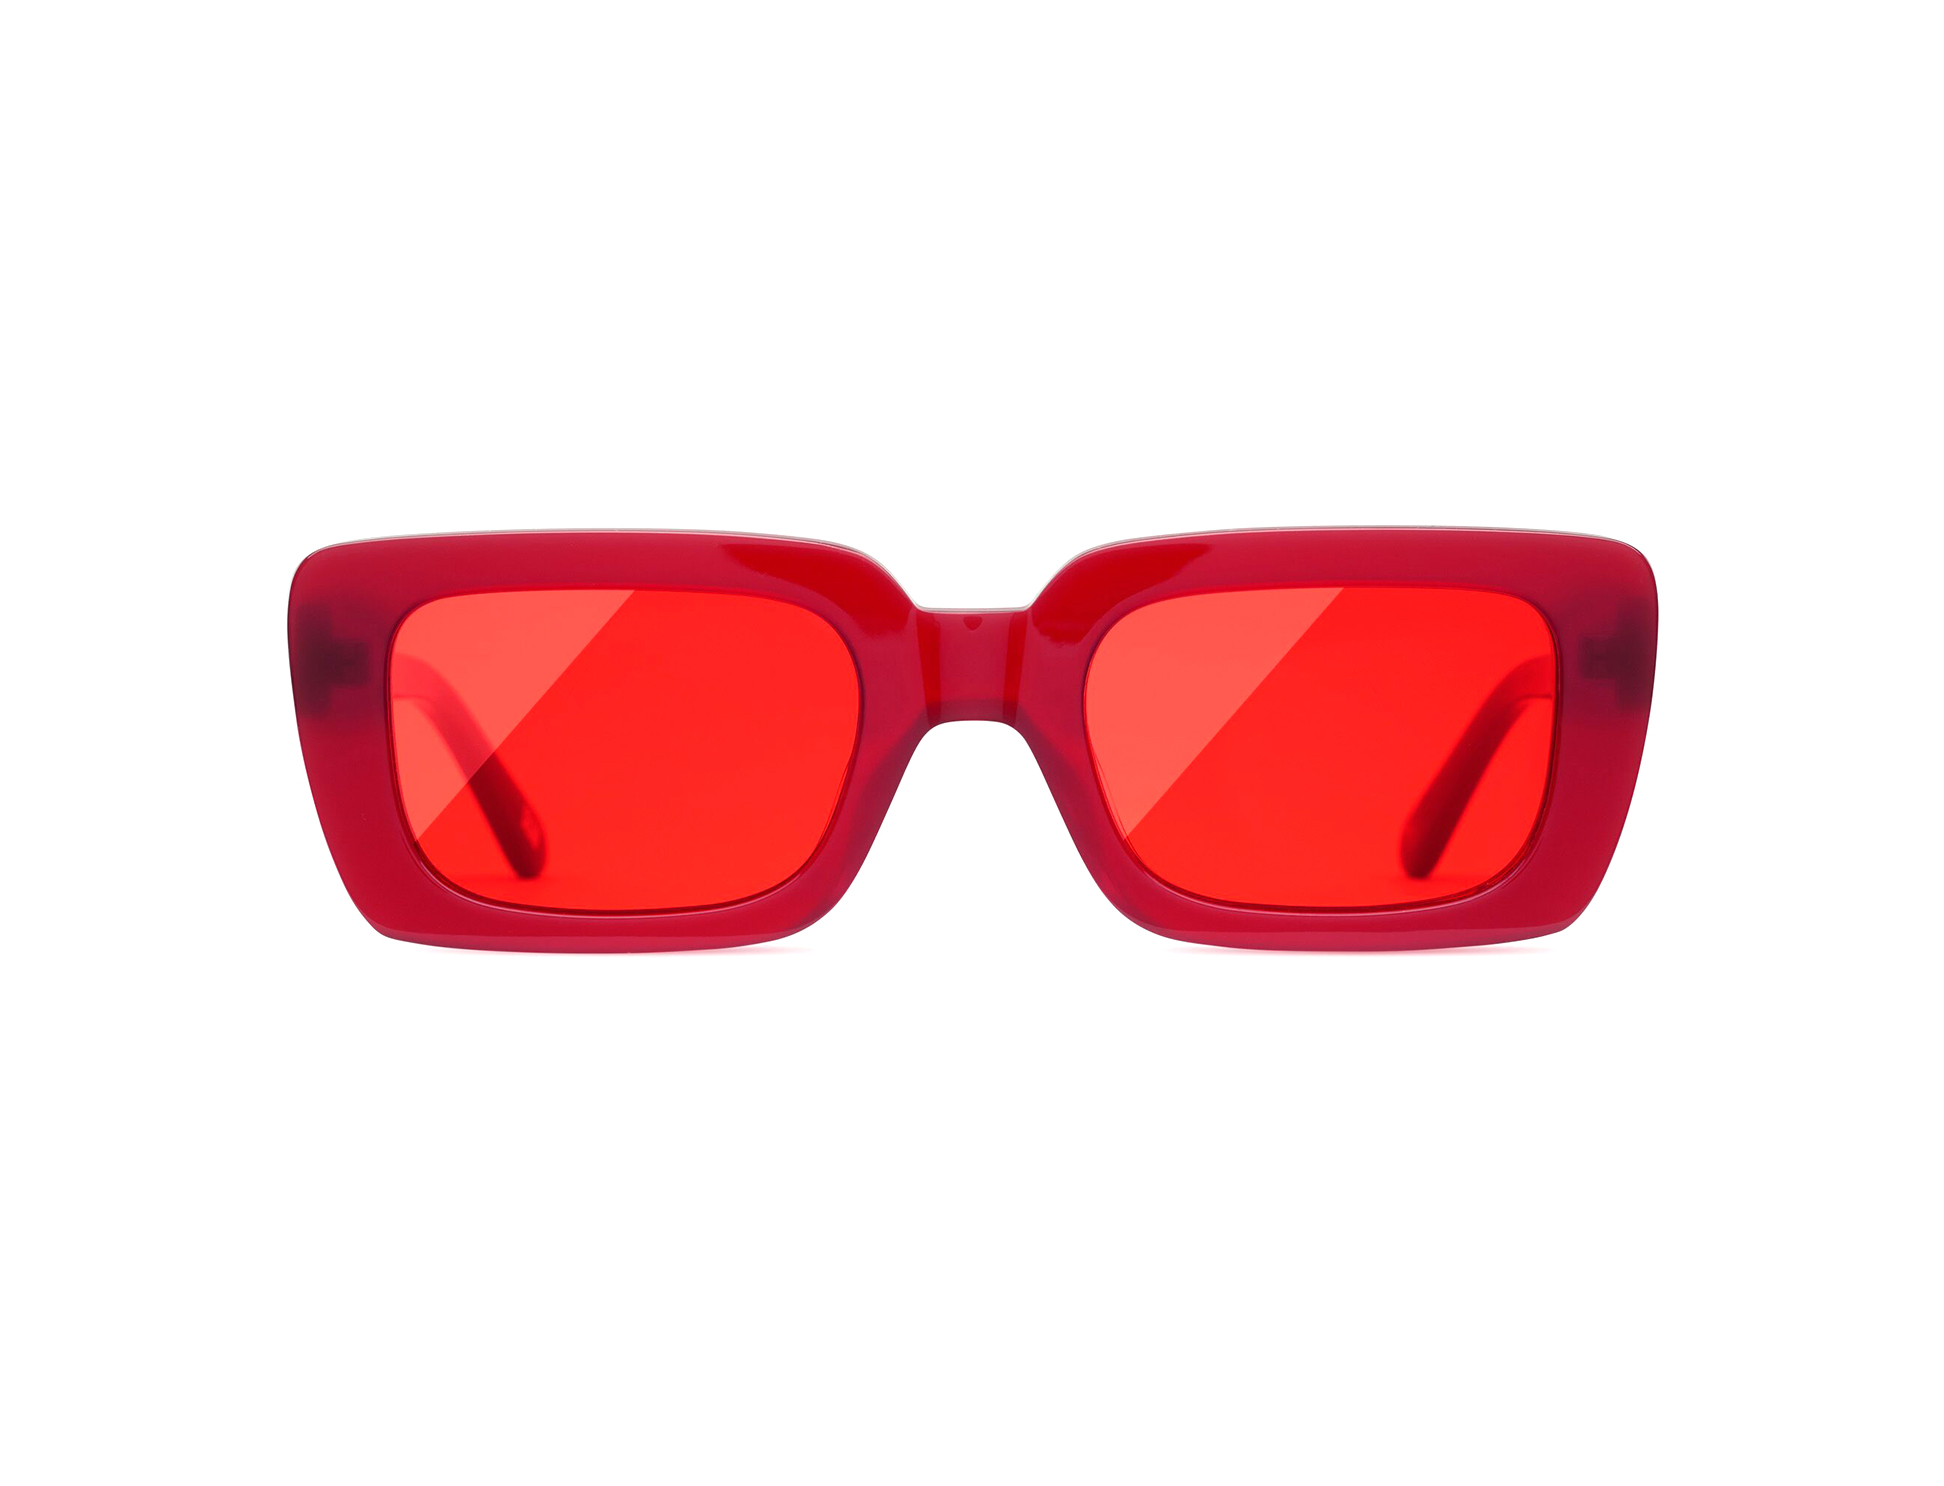 როგორი სათვალეები იქნება ტრენდული ზაფხულში? - მთავარი ტენდენციები Chimi Eyewear-სგან